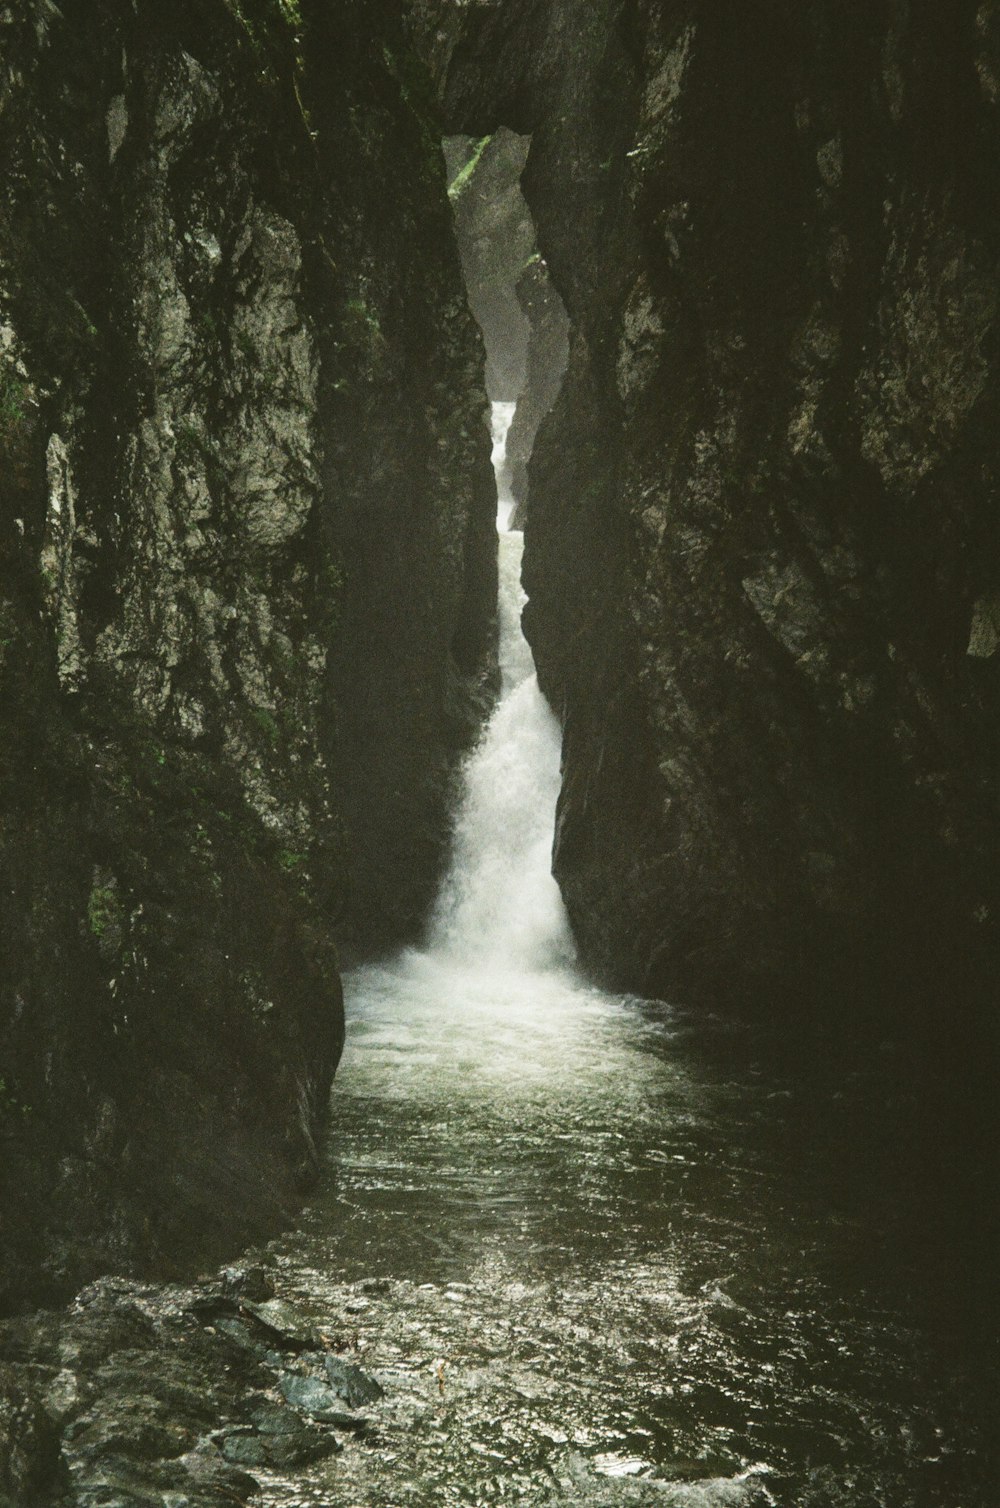 두 개의 큰 바위 사이를 흐르는 좁은 강